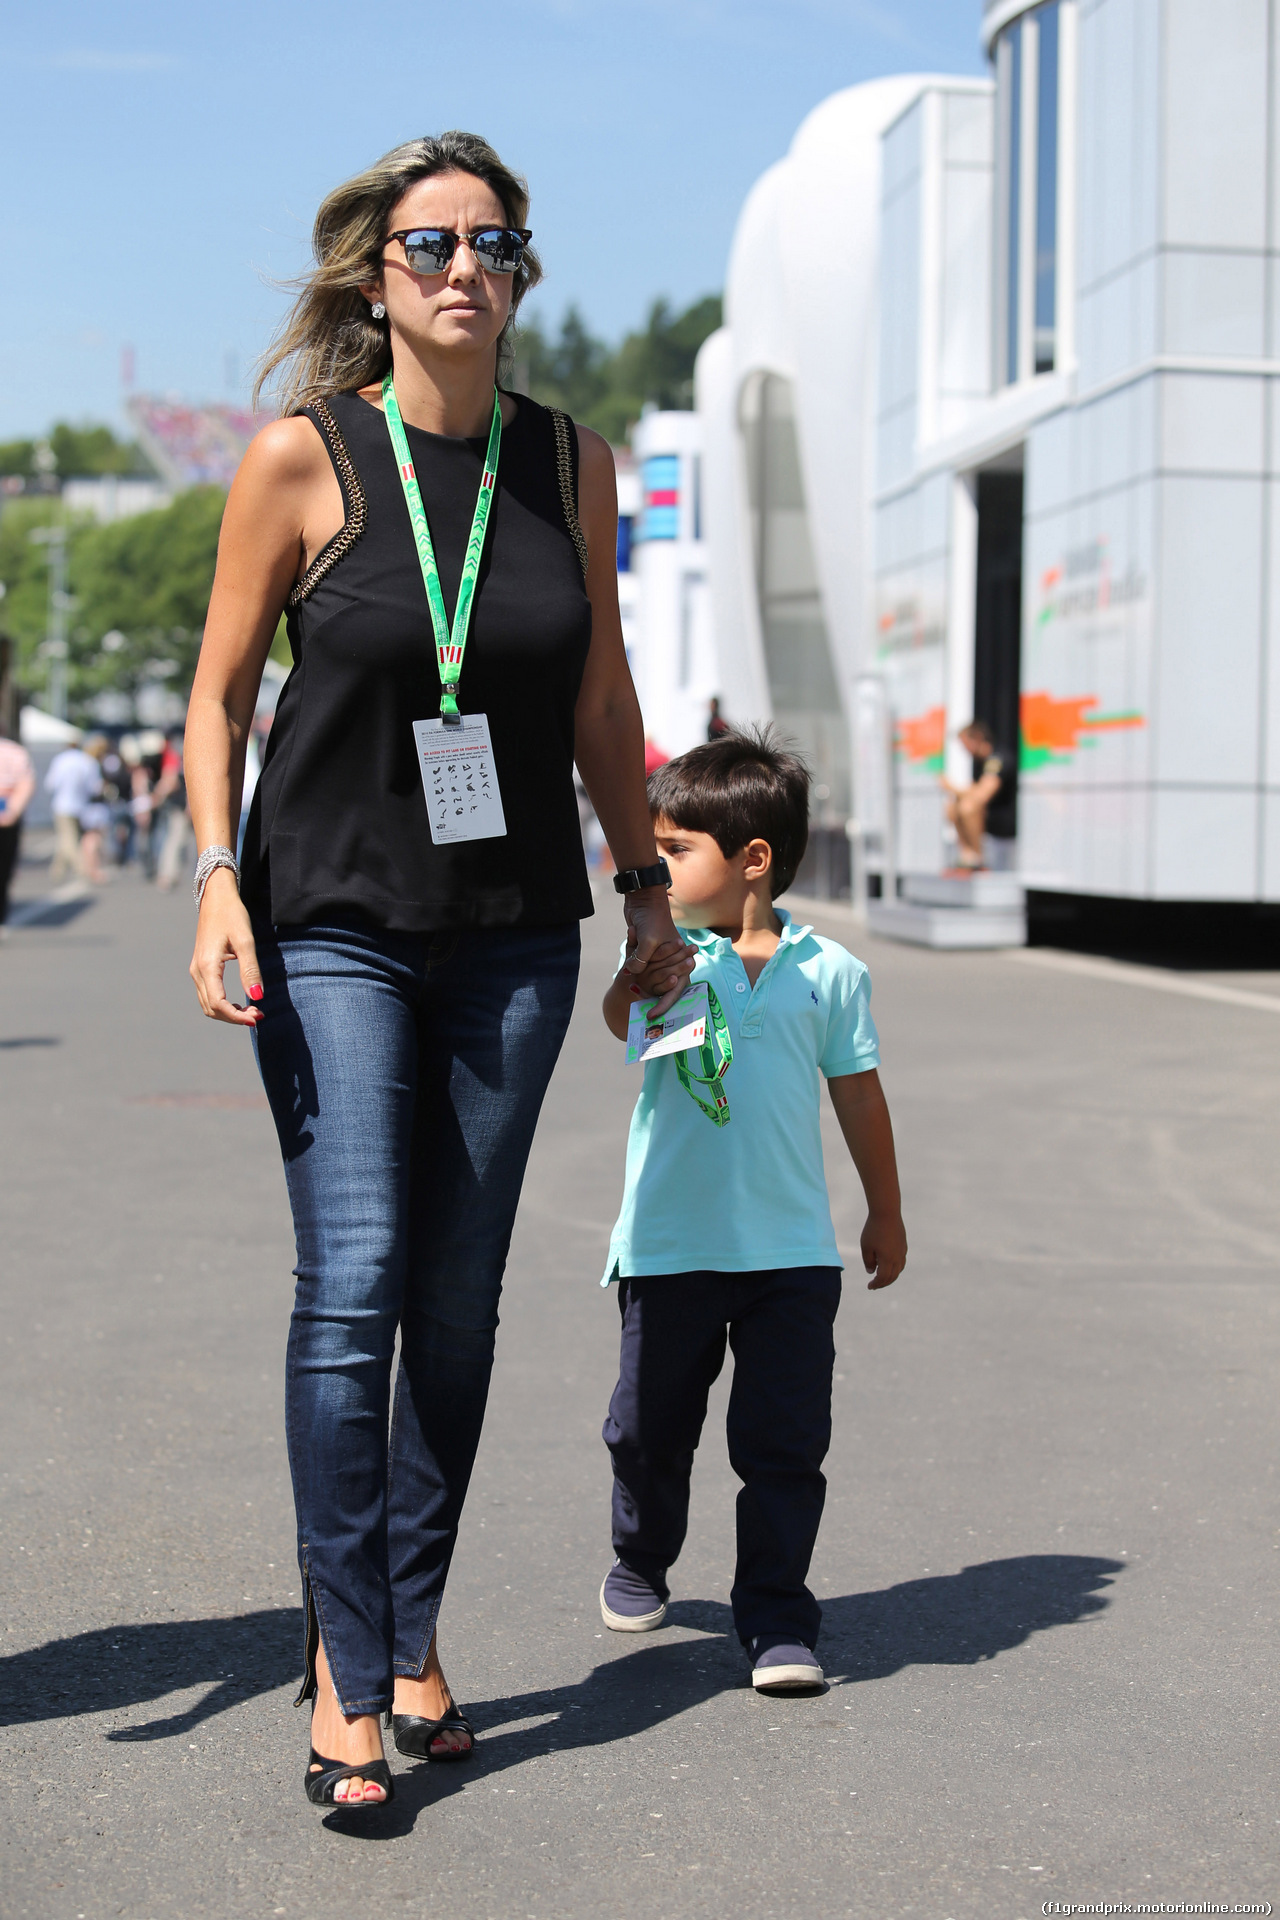 GP AUSTRIA, 22.06.2014- Raffaela Bassi (BRA), wife of Felipe Massa (BRA) e their son Felipinho